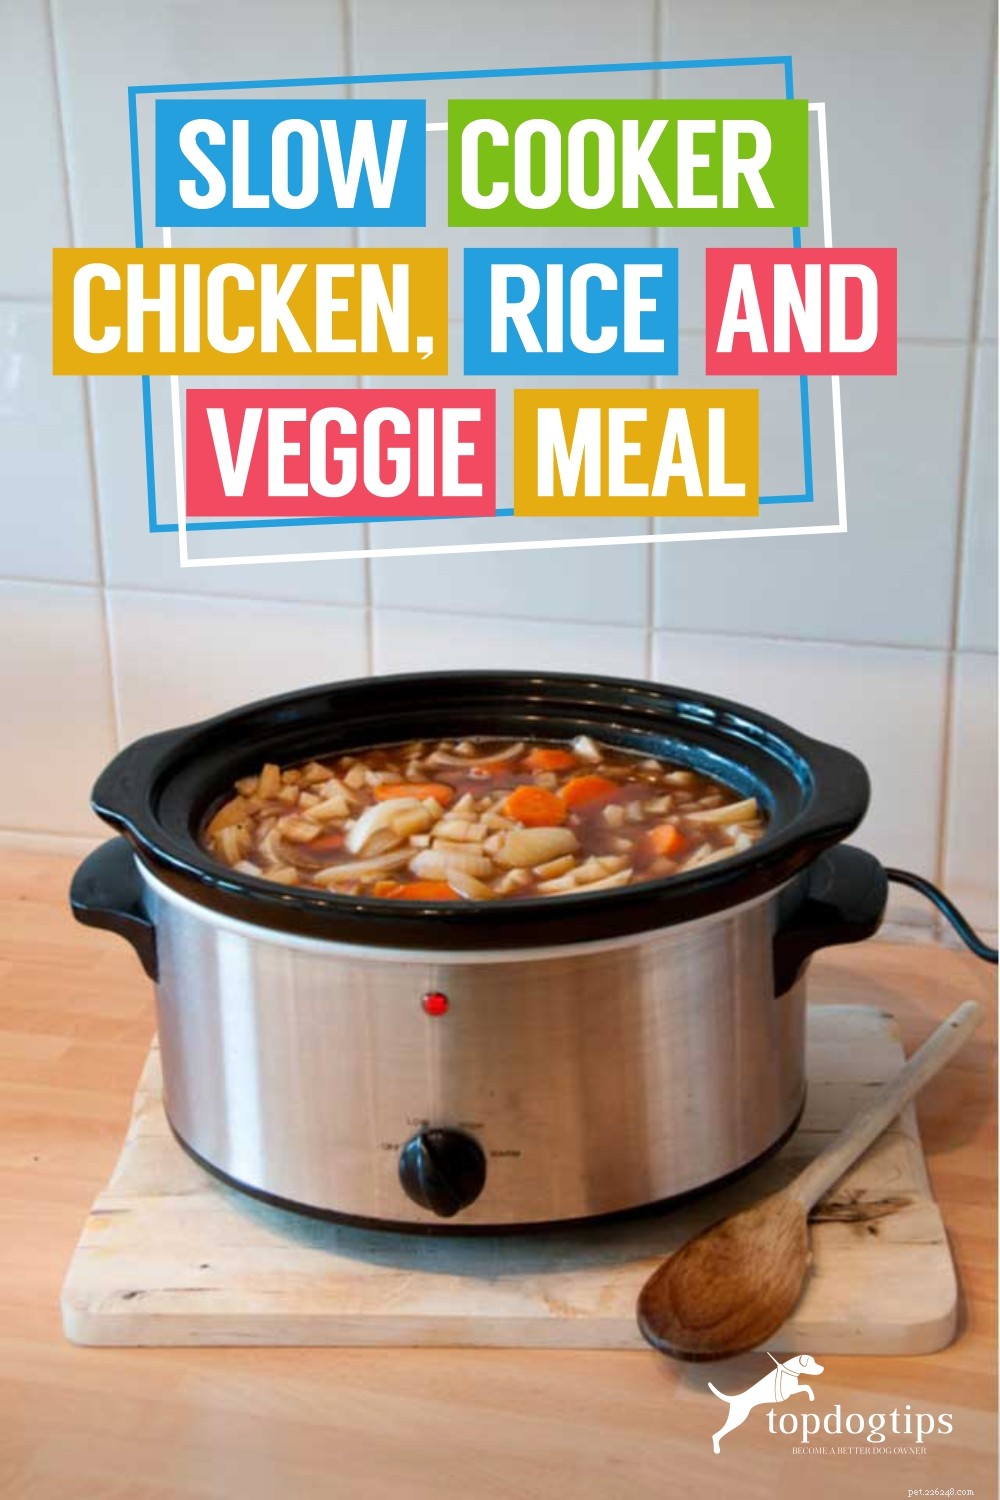 Recette :Repas de poulet, riz et légumes à la mijoteuse